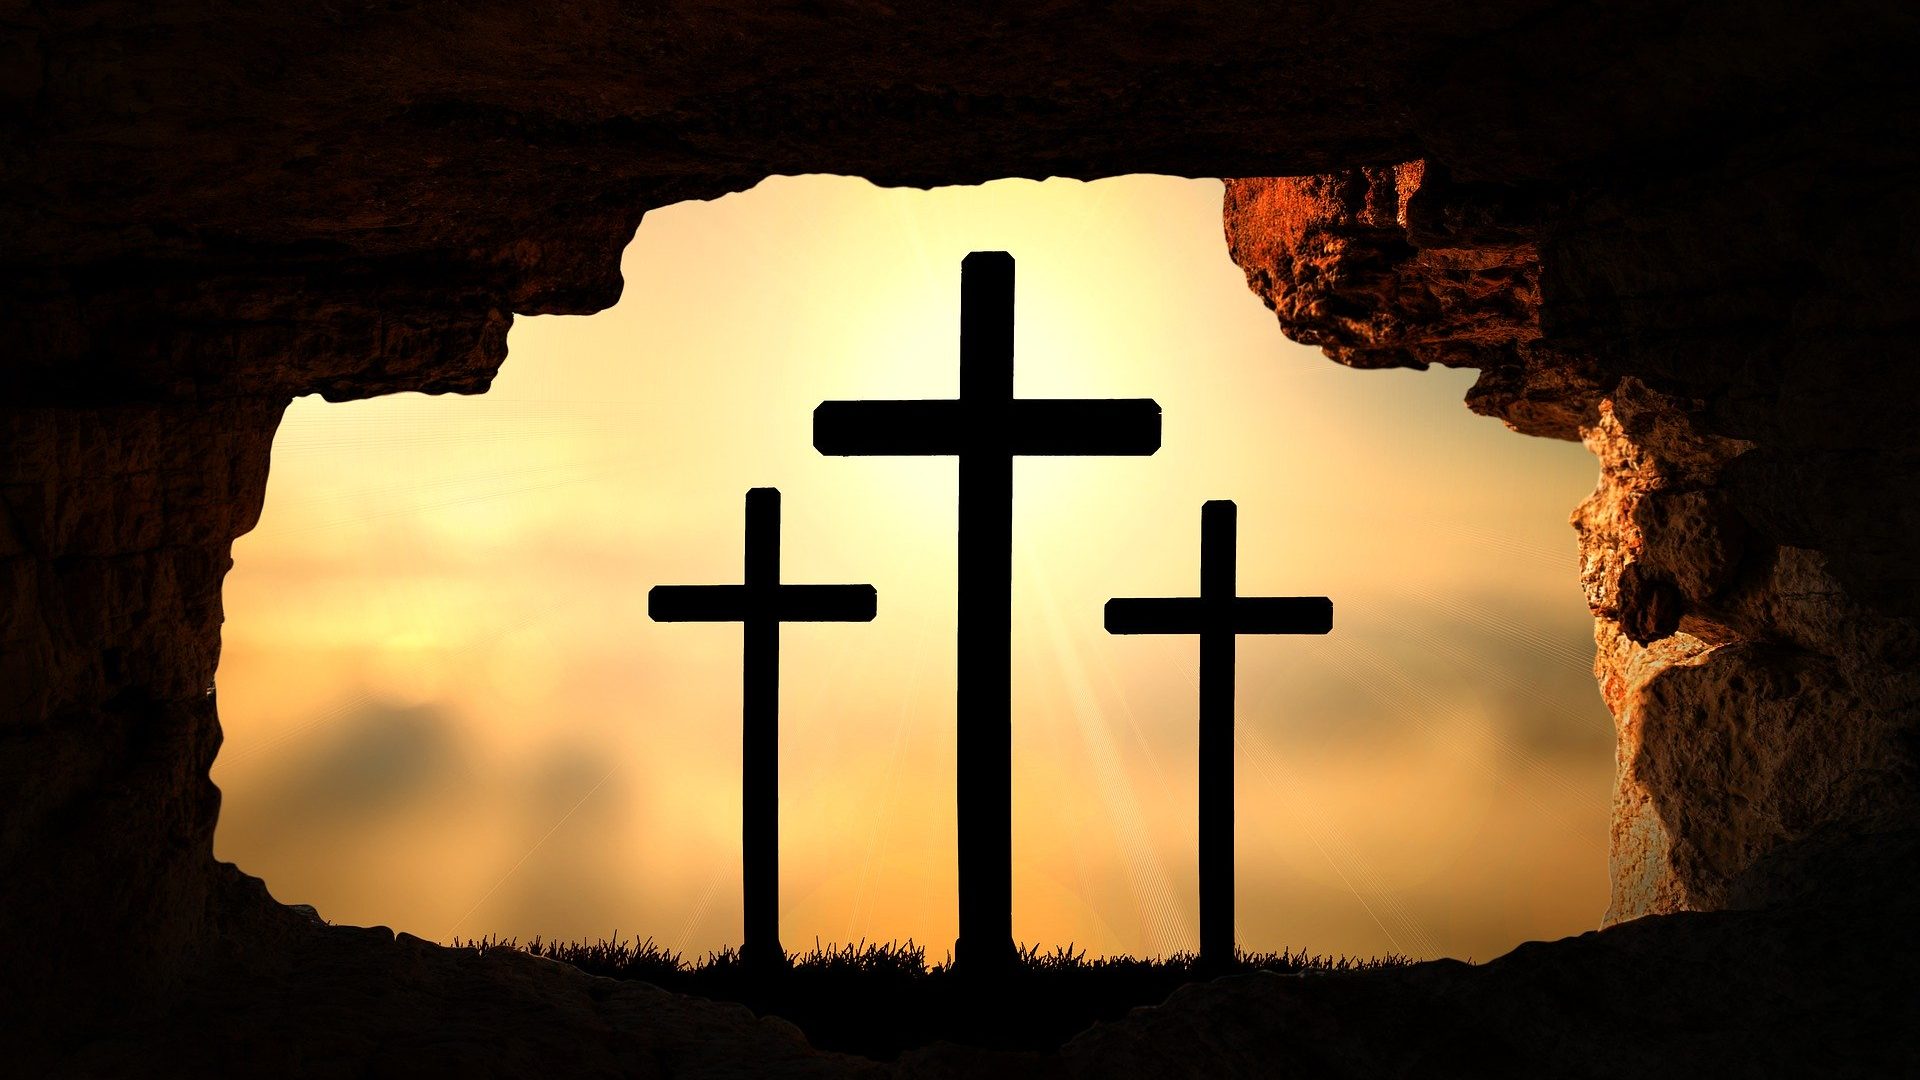 As Evidências da Ressurreição de Jesus Cristo